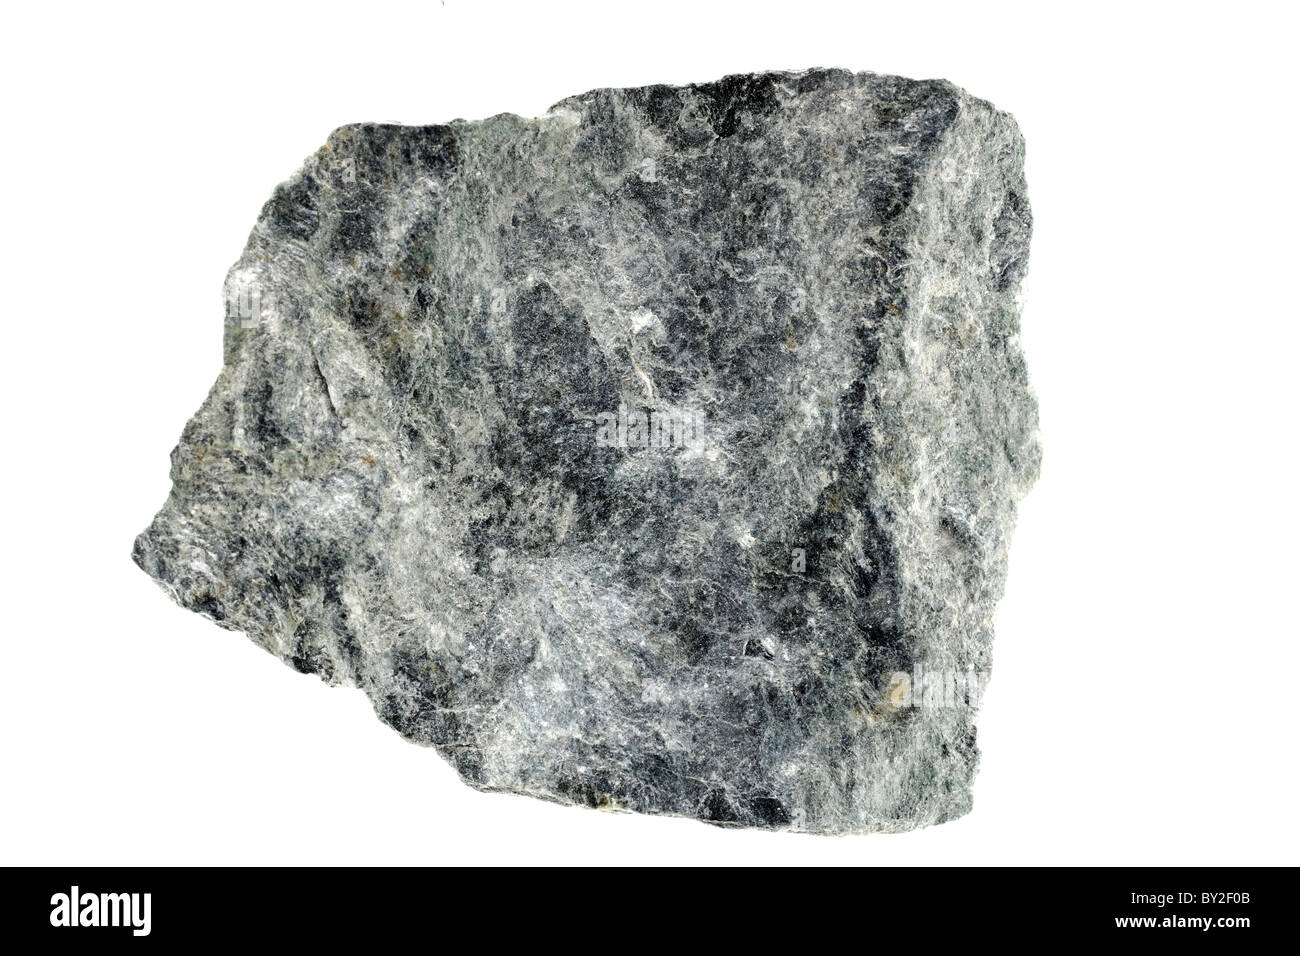 Le schiste. Type de roches métamorphiques Banque D'Images